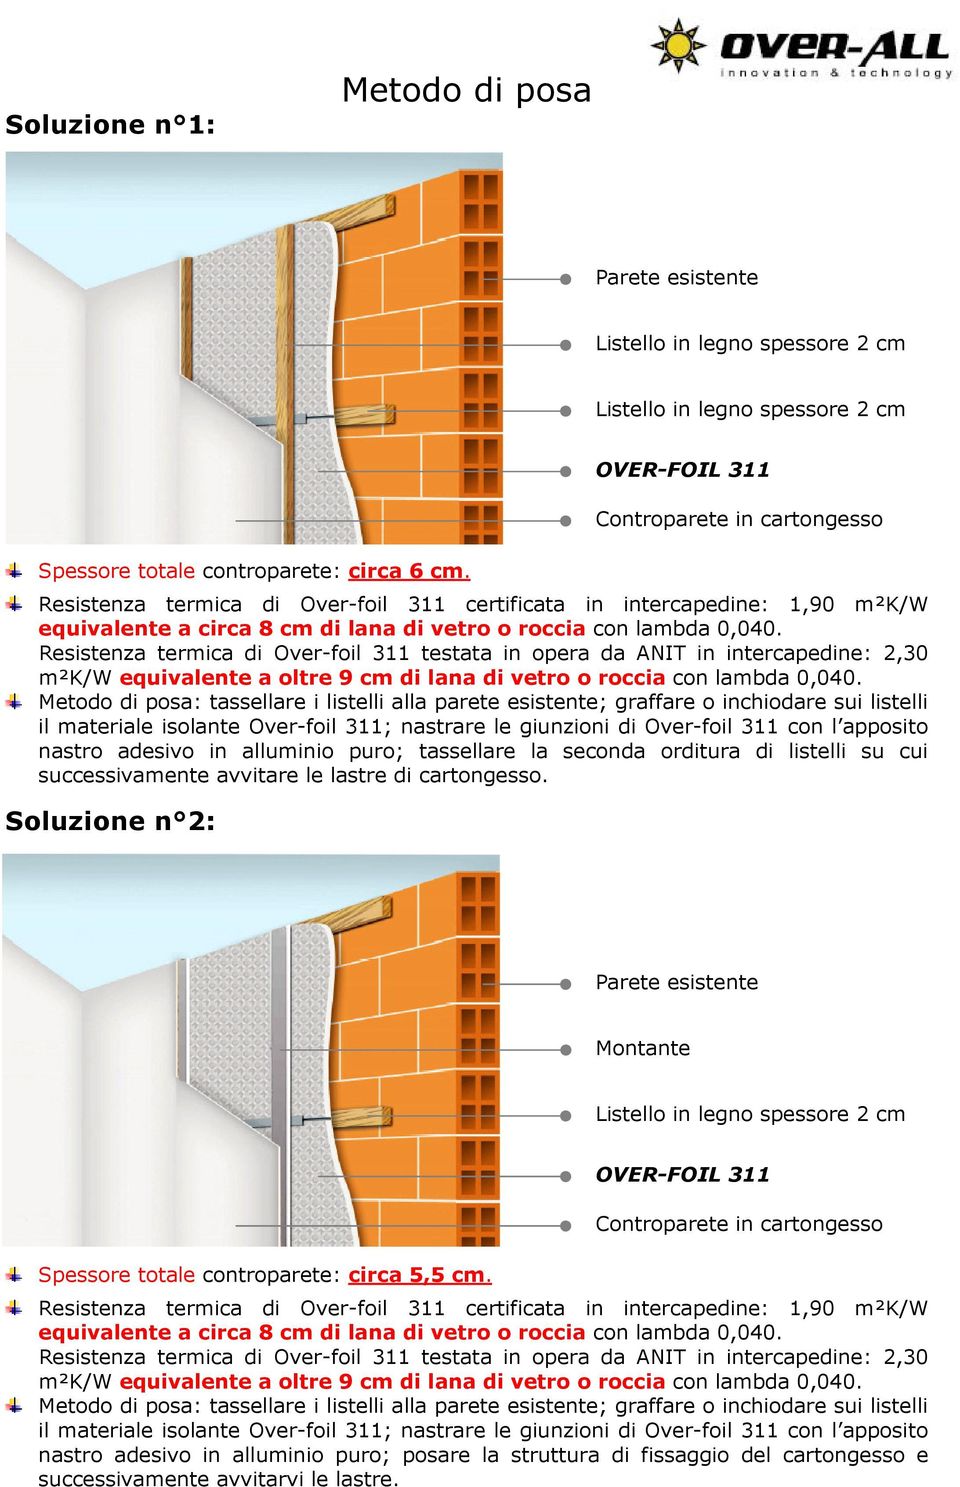 Resistenza termica di Over-foil 311 testata in opera da ANIT in intercapedine: 2,30 m²k/w equivalente a oltre 9 cm di lana di vetro o roccia con lambda 0,040.